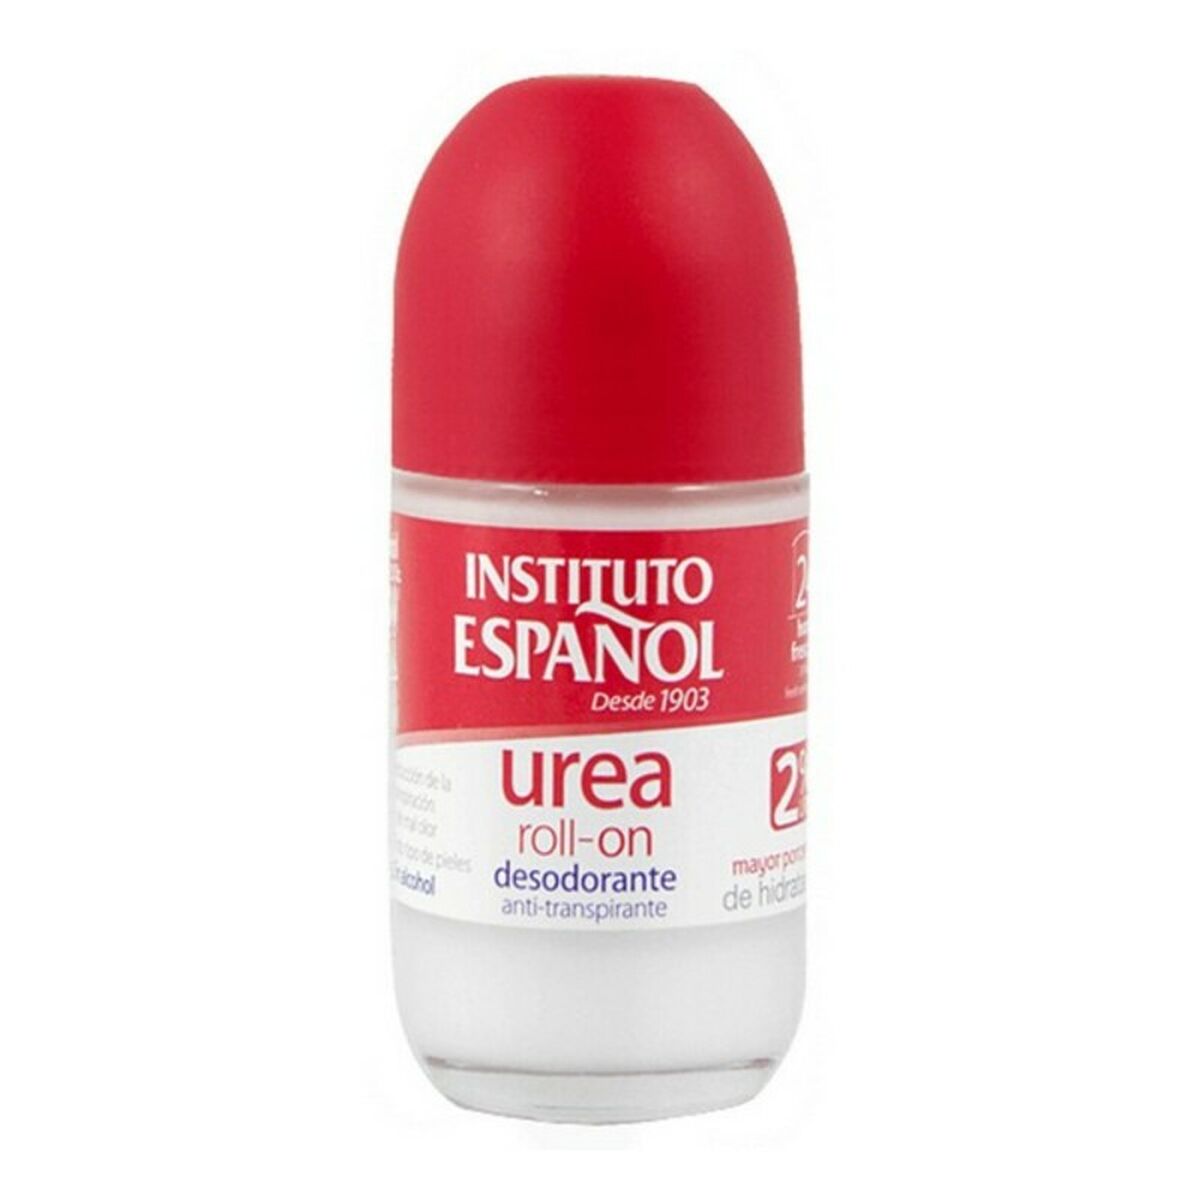 Deodorante Roll-on Urea Instituto Español Urea (75 ml) 75 ml